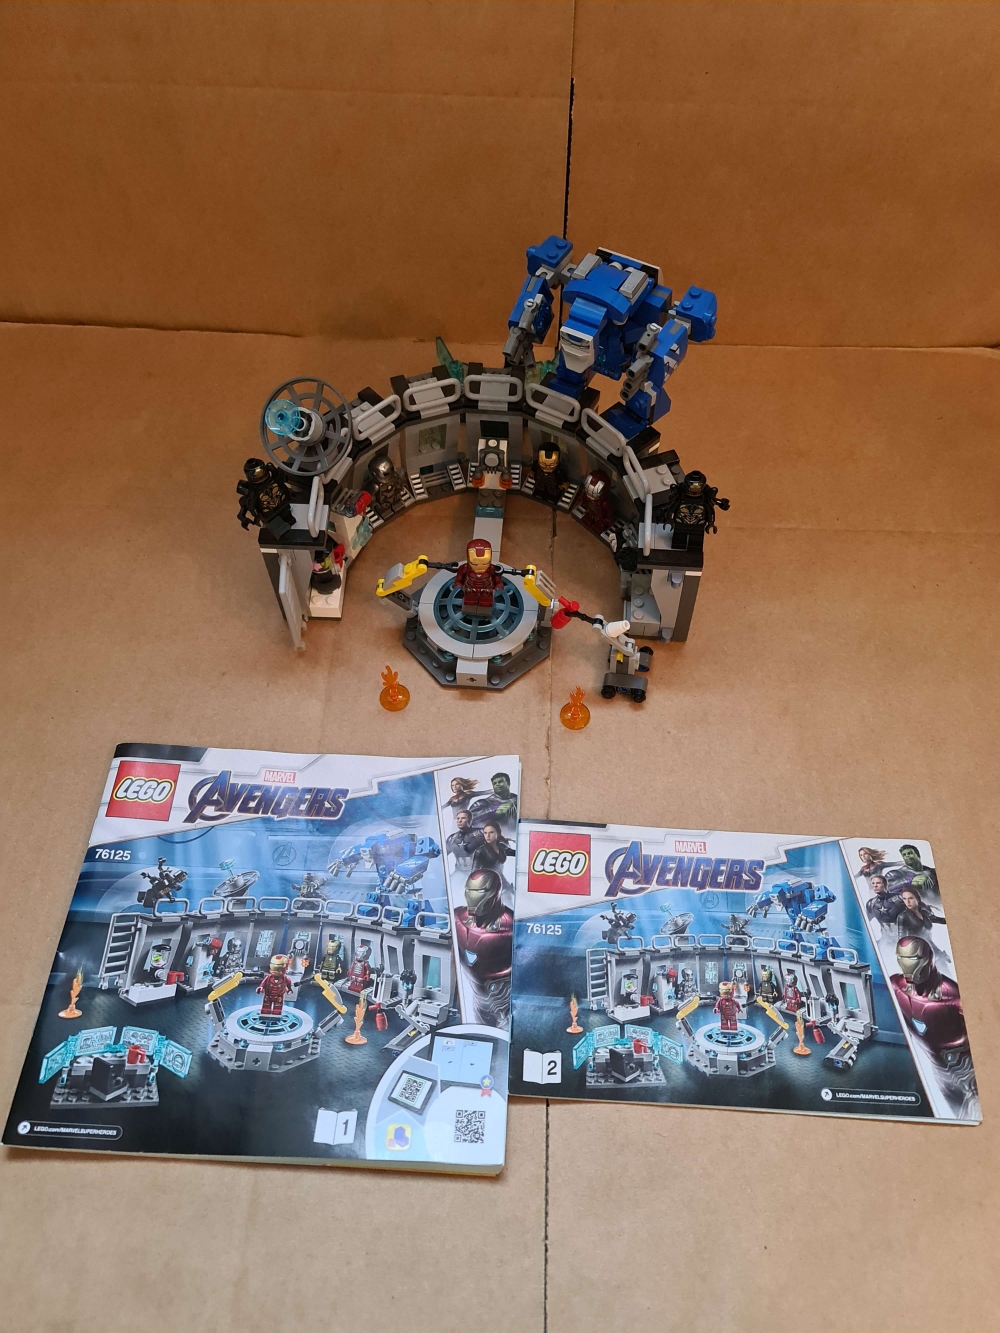 Sett 76125 fra Lego Super Heroes : Avengers Endgame serien.
Som nytt.  Strøkent sett.
Komplett med manualer.